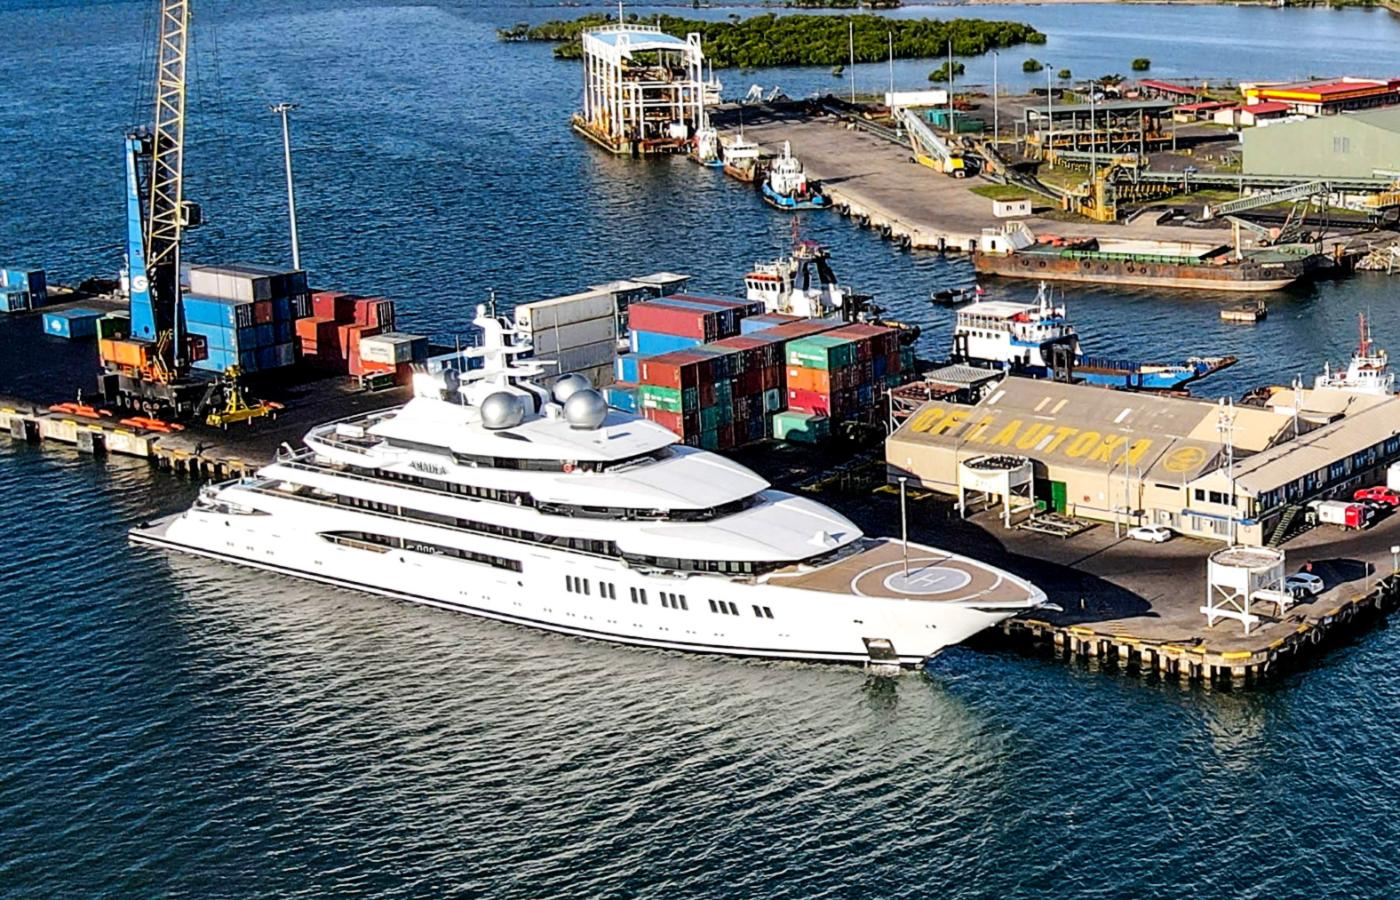 Na początku administracji prezydenta Joe Bidena udało się skłonić władze Fidżi do konfiskaty jachtu wartości 300 mln dol. należącego do Sulejmana Kerimowa.